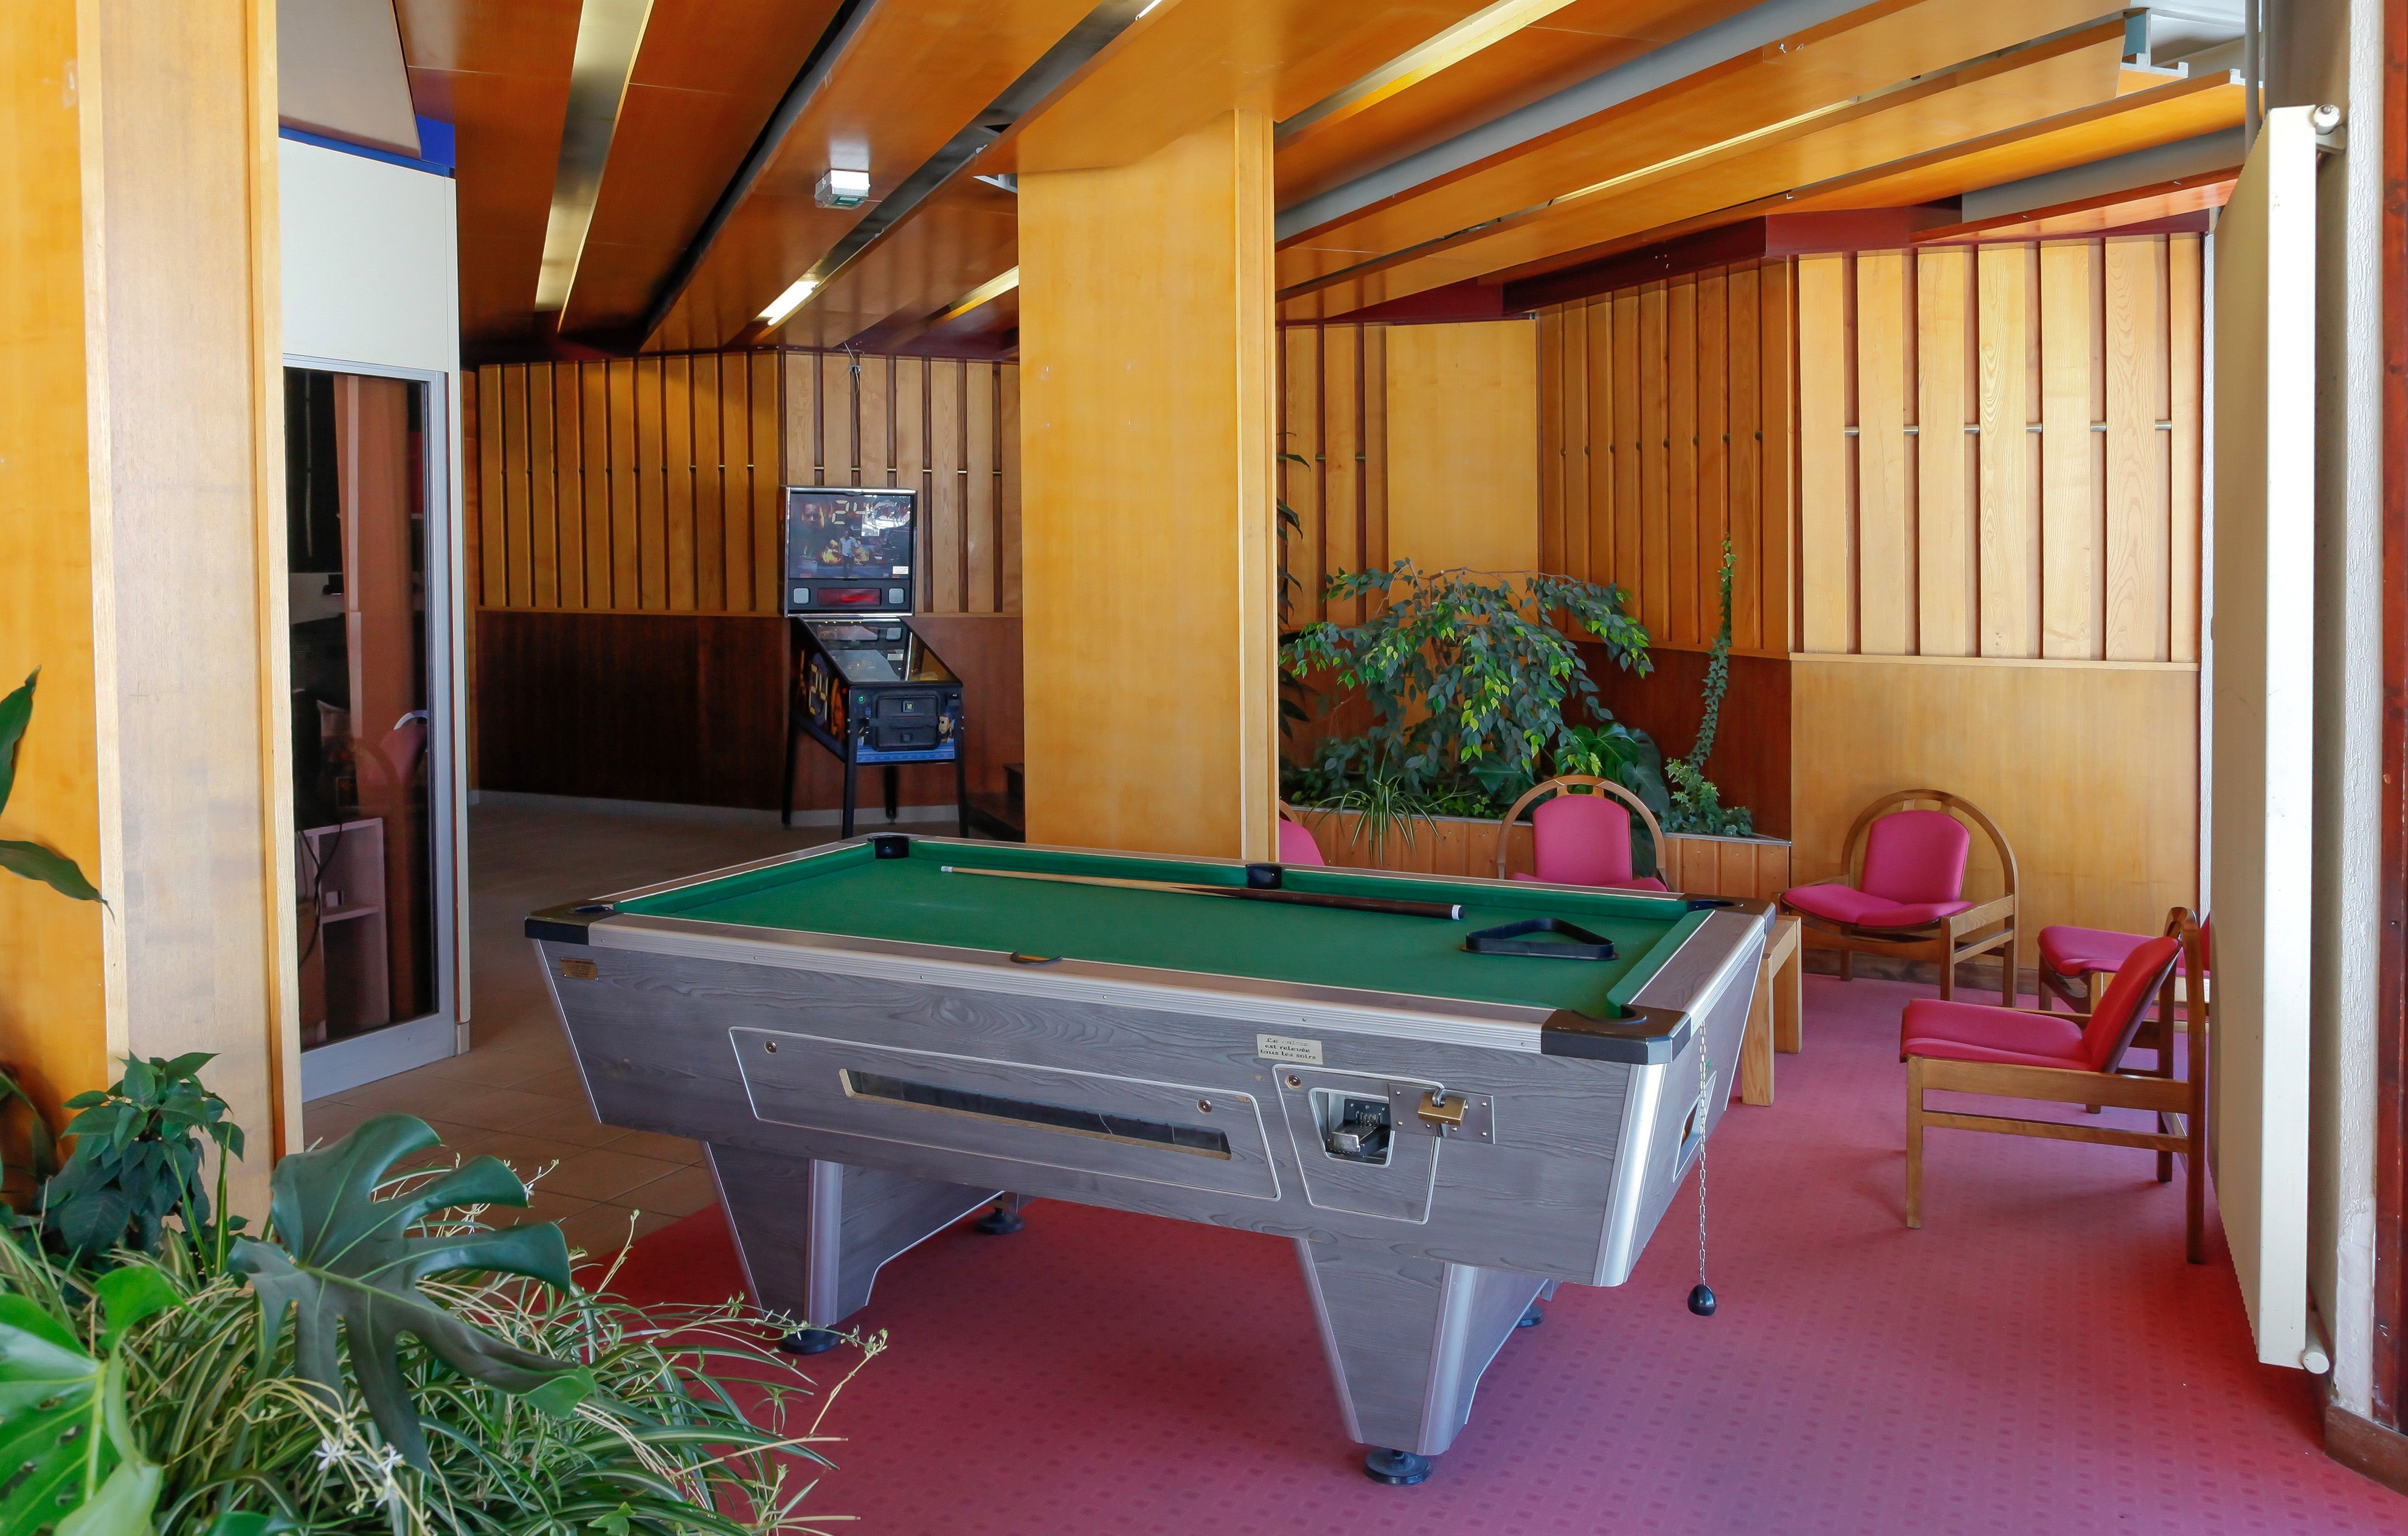 Billiardtisch in der Residenz Tourotel